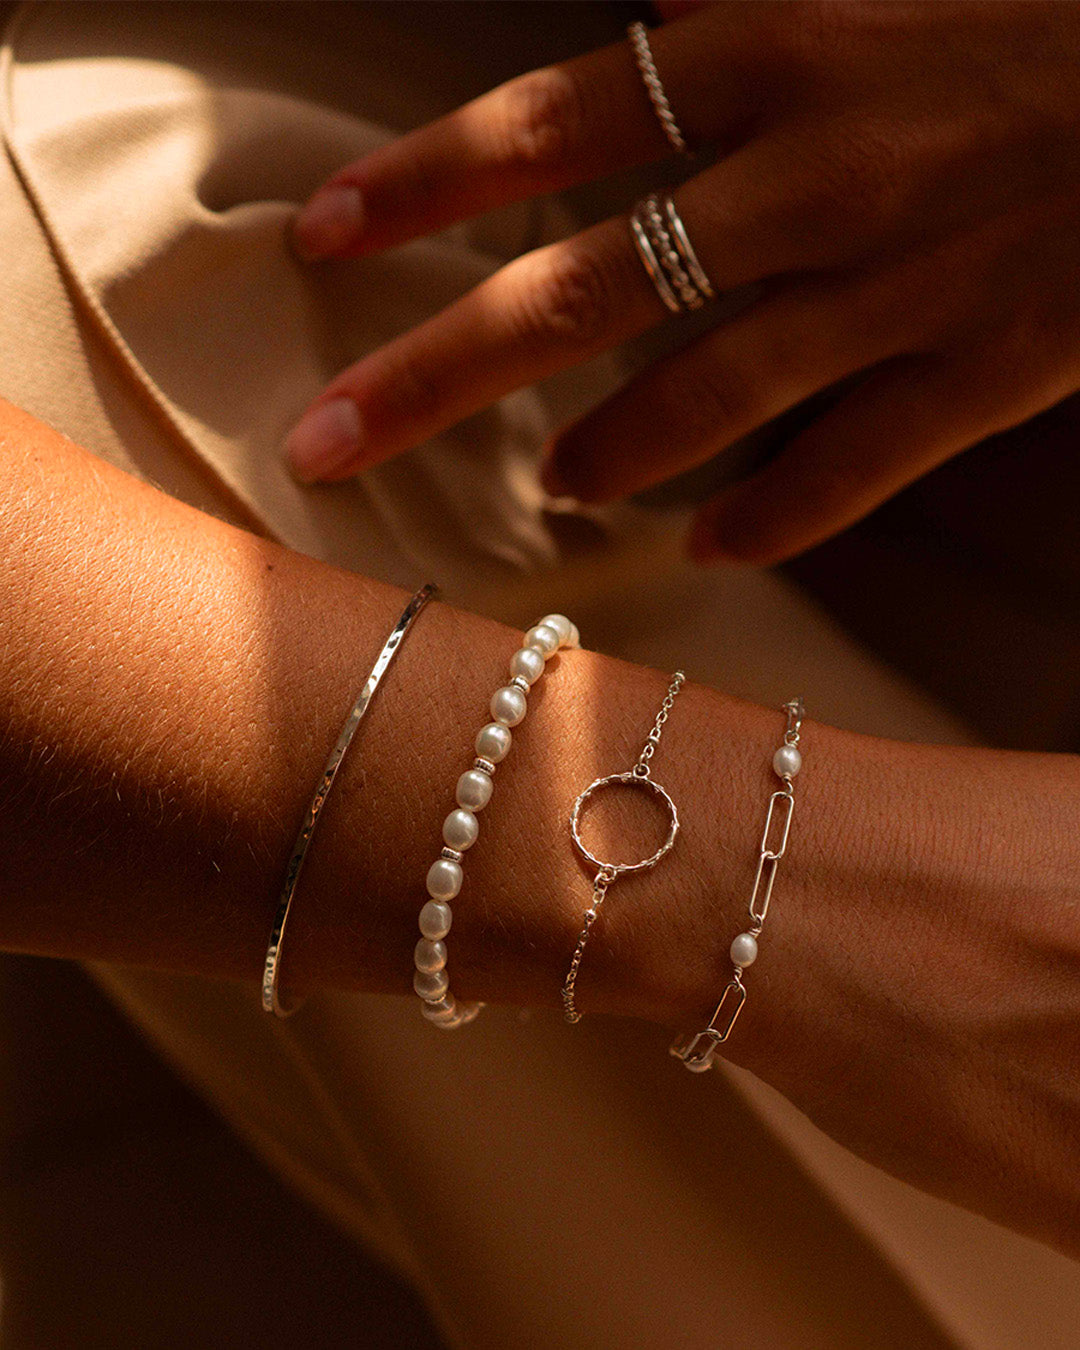 Association de bracelets en argent massif 925 composée d'un jonc fin martelé, d'un bracelet en perles de culture, d'un bracelet fin en chaîne boule avec un anneau en tige de fleur, et d'un bracelet en maille rectangle avec des perles de cultures rondes fabriqués en France.